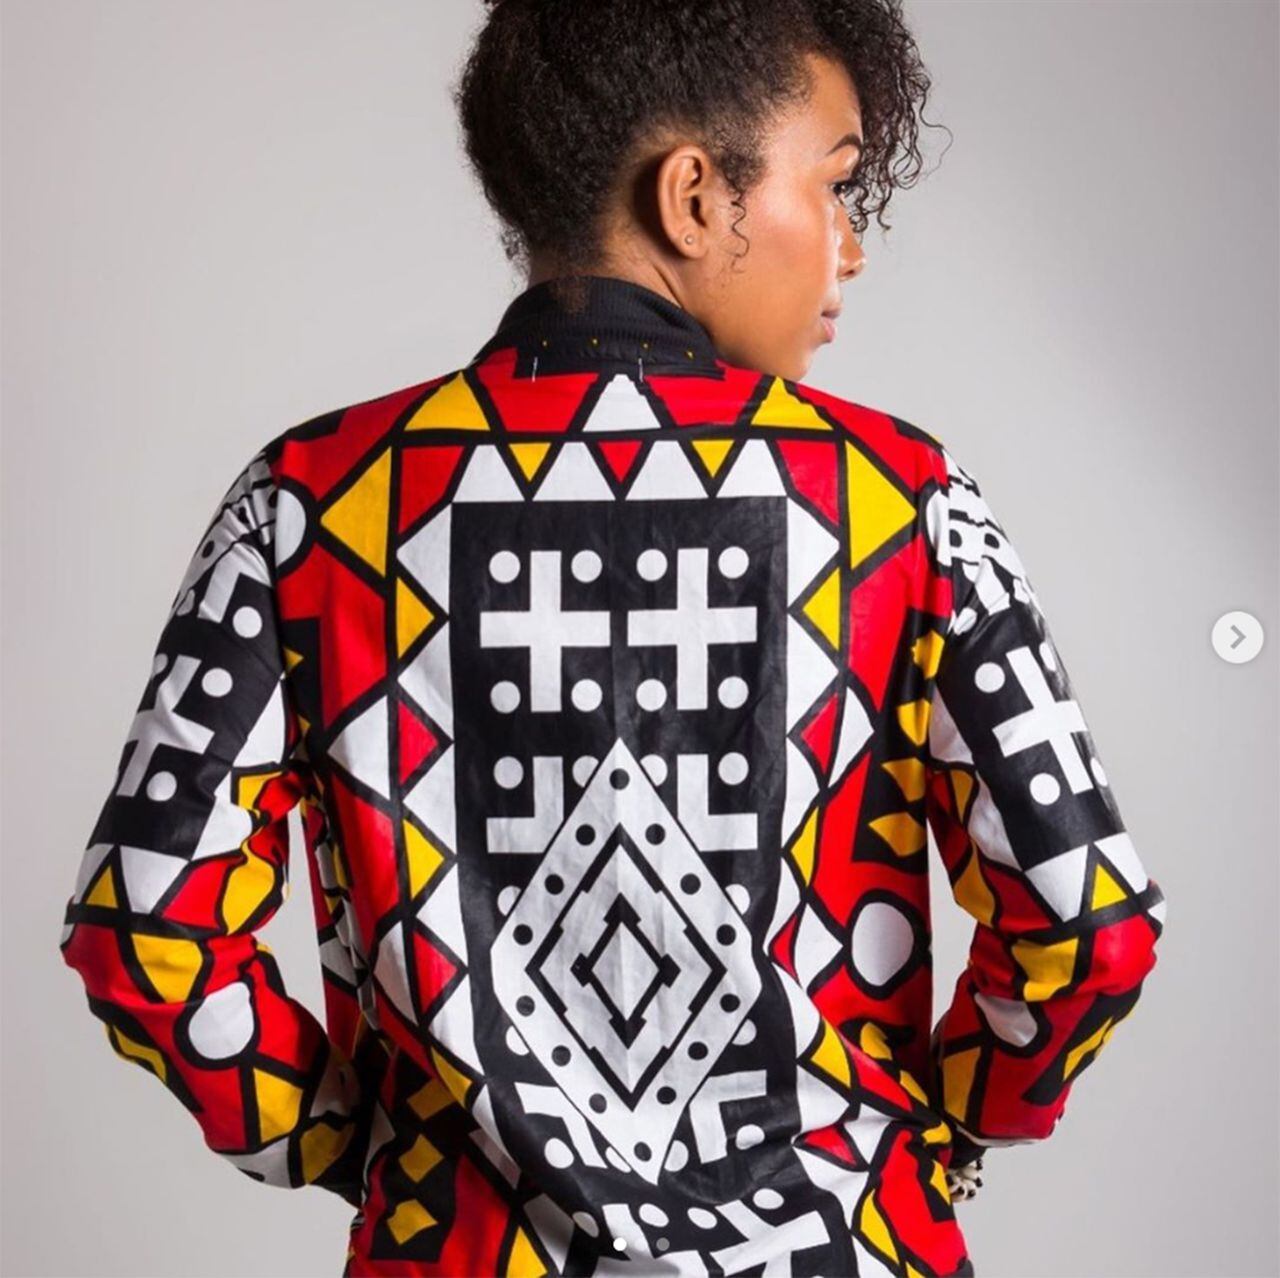 La moda africana que llegó a Colombia de la mano de Cruz Arboleda